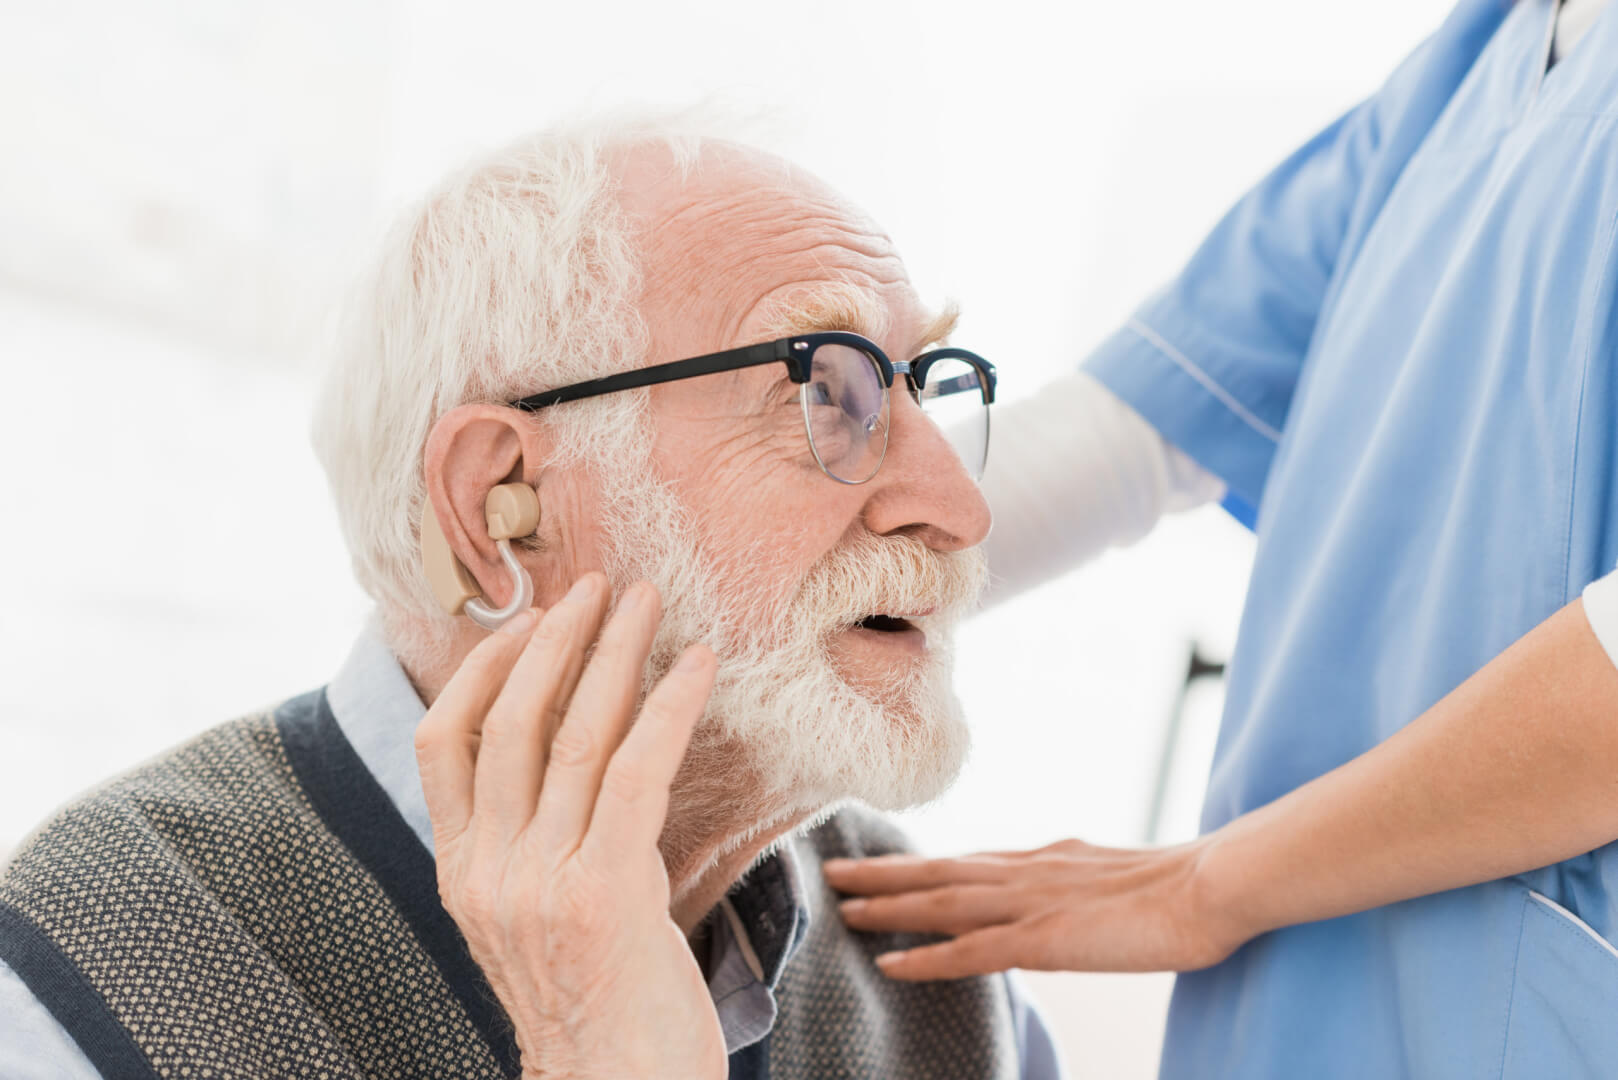 Un anciano se sostiene el audífono mientras una experta sanitaria le toca los hombros como muestra de afecto ante el momento de colocación del dispositivo auditivo.